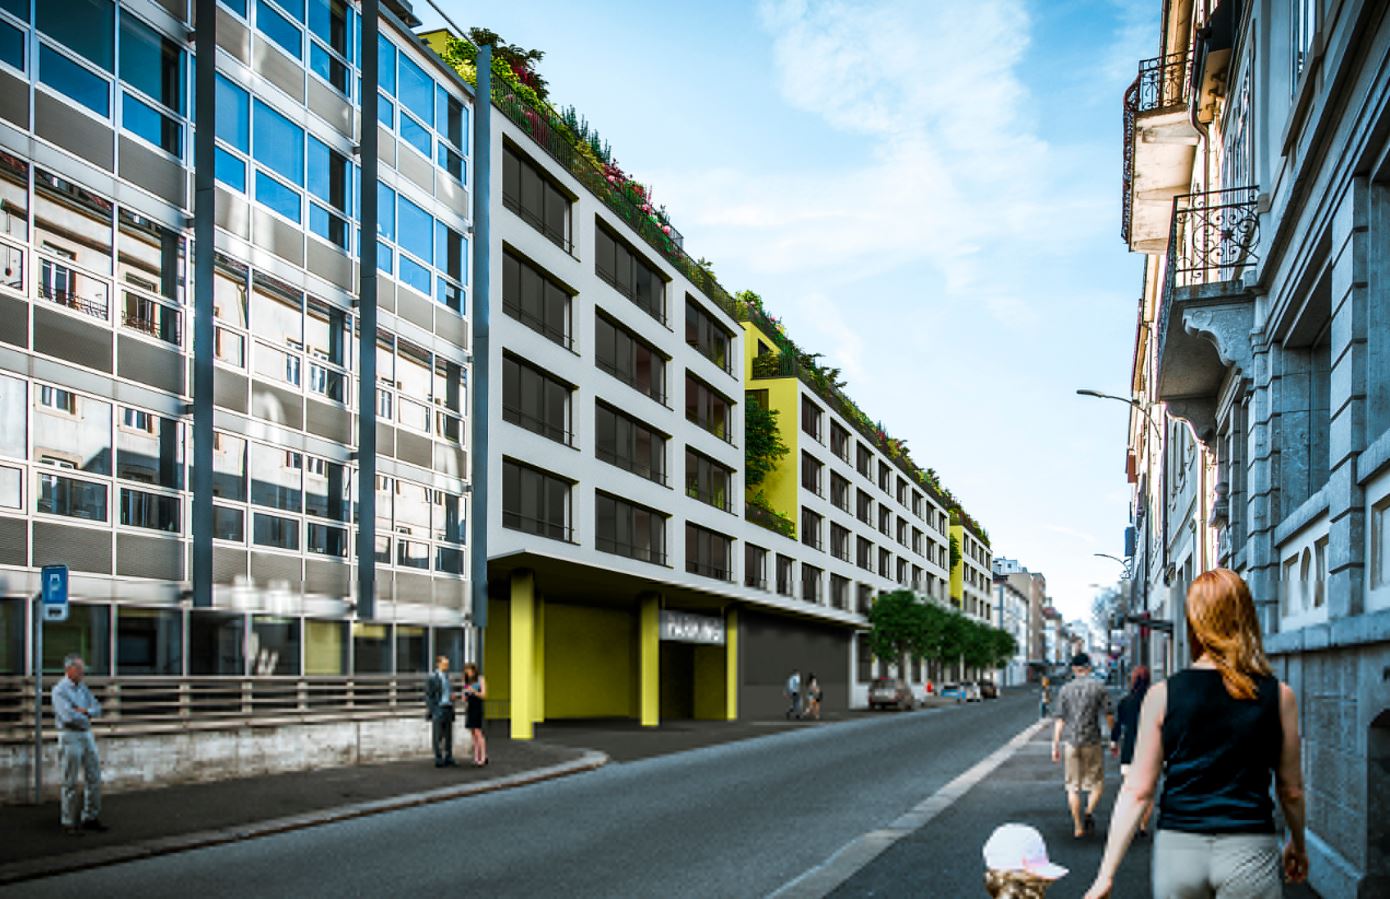 Dans le cadre du projet ILOT, Implenia construit un bâtiment à usage mixte dans le centre de La Chaux-de-Fonds. En dehors des bureaux et surfaces commerciales, des logements en propriété ou locatifs, ainsi qu’un parking public souterrain seront également aménagés. (Photo: Dubois SA, La Chaux-de-Fonds)